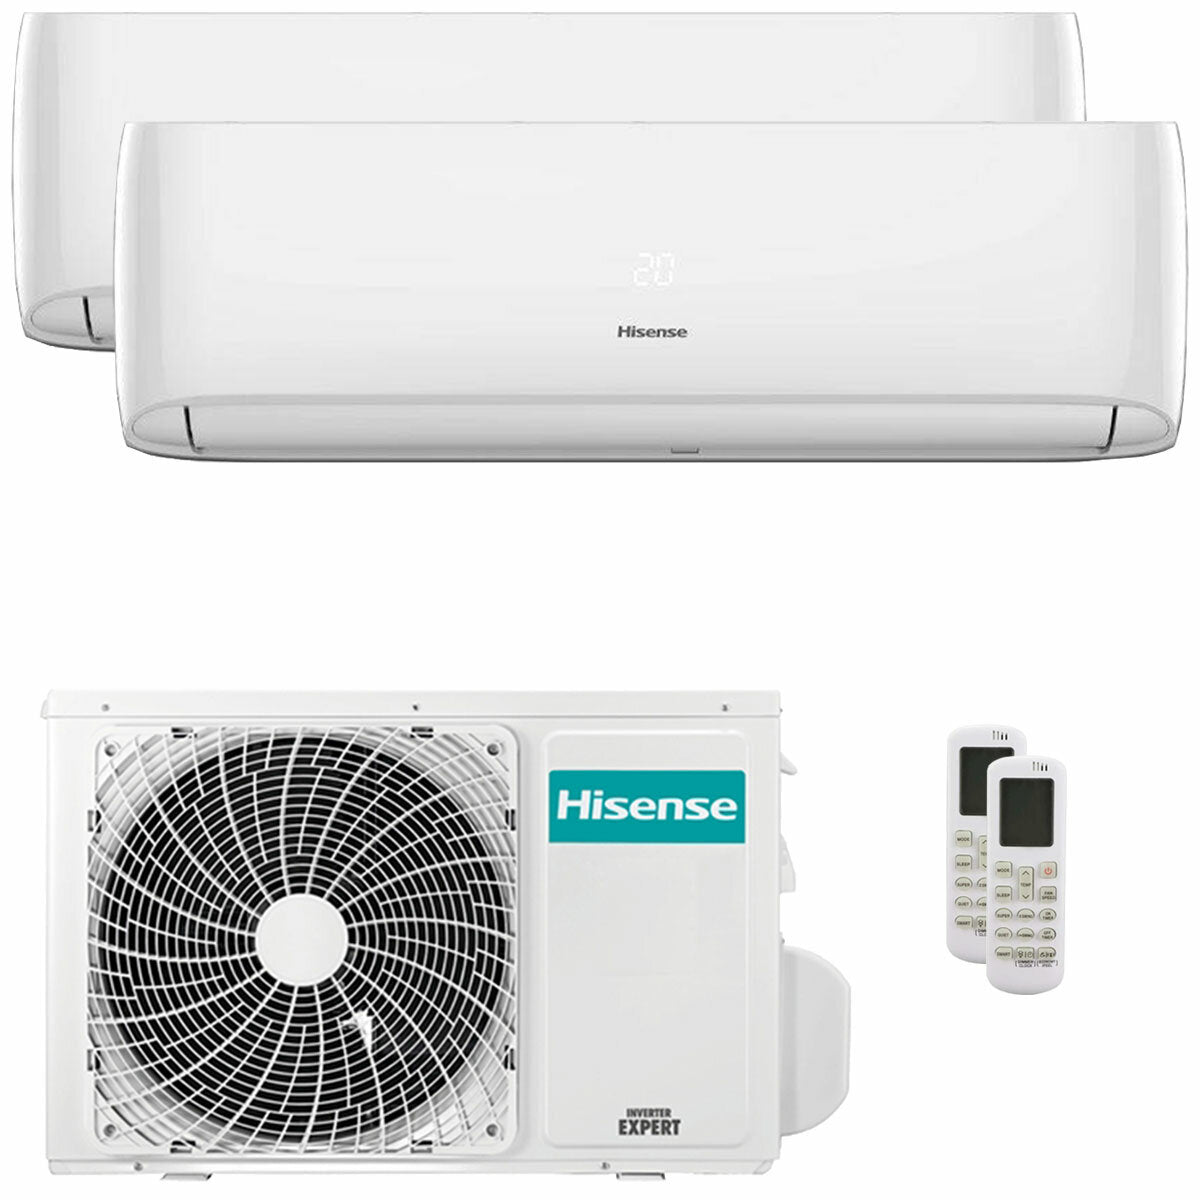 Hisense Hi-Comfort climatiseur double split 12000+12000 BTU onduleur A++ wifi unité extérieure 5.0 kW